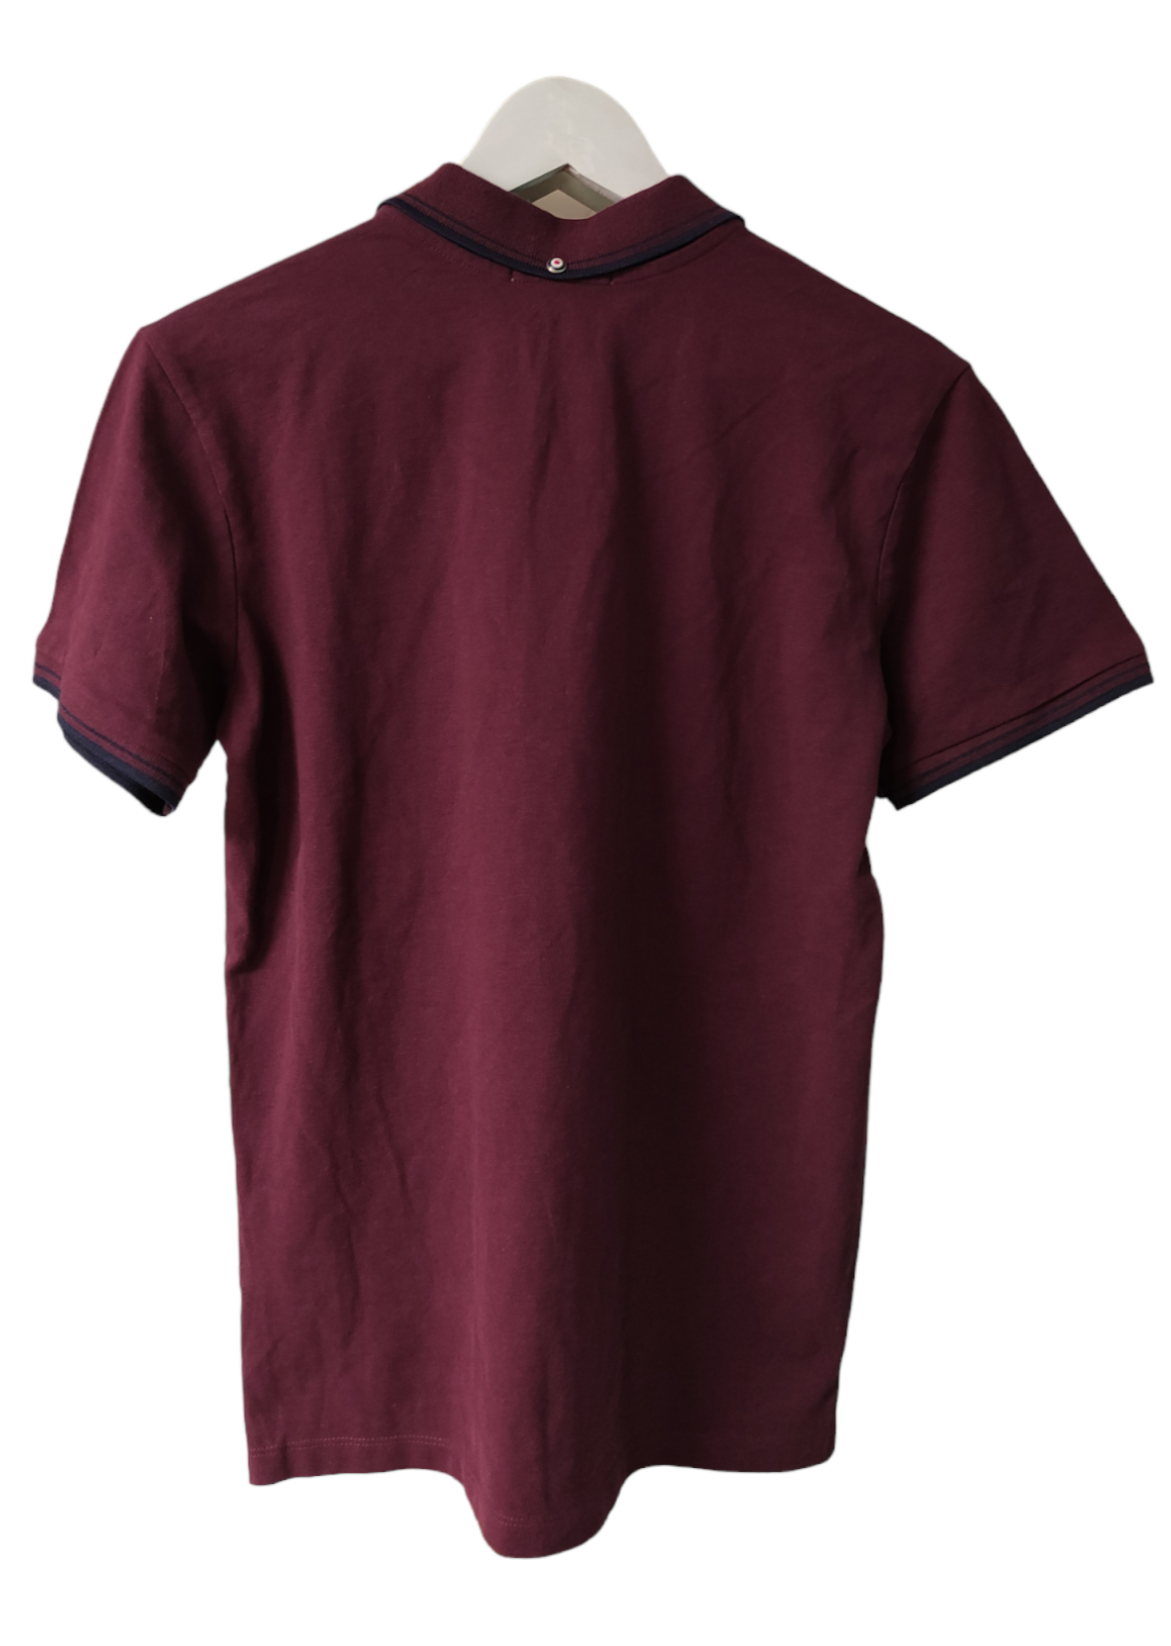 Stock, Ανδρική Μπλούζα - T-Shirt τύπου Polo BEN SHERMAN σε Μελιτζανί χρώμα (Small)